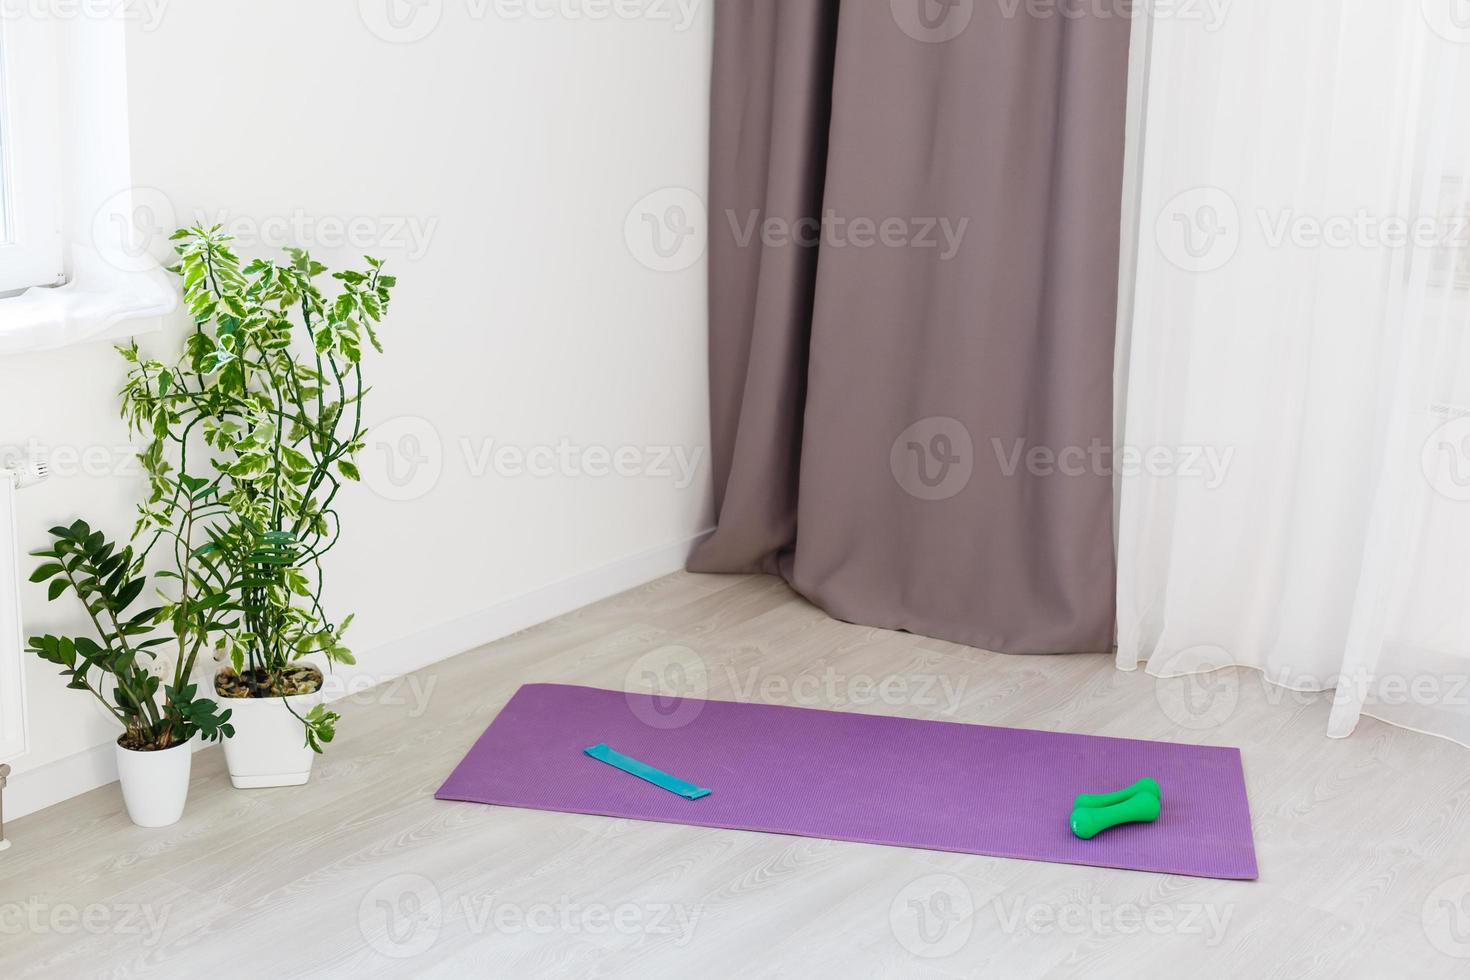 ausgerollt Yoga Matte auf hölzern Fußboden im modern Fitness Center oder beim Zuhause mit groß Fenster und Weiß Backstein Wände, komfortabel Raum zum tun Sport Übungen, meditieren, Yoga Ausrüstung foto